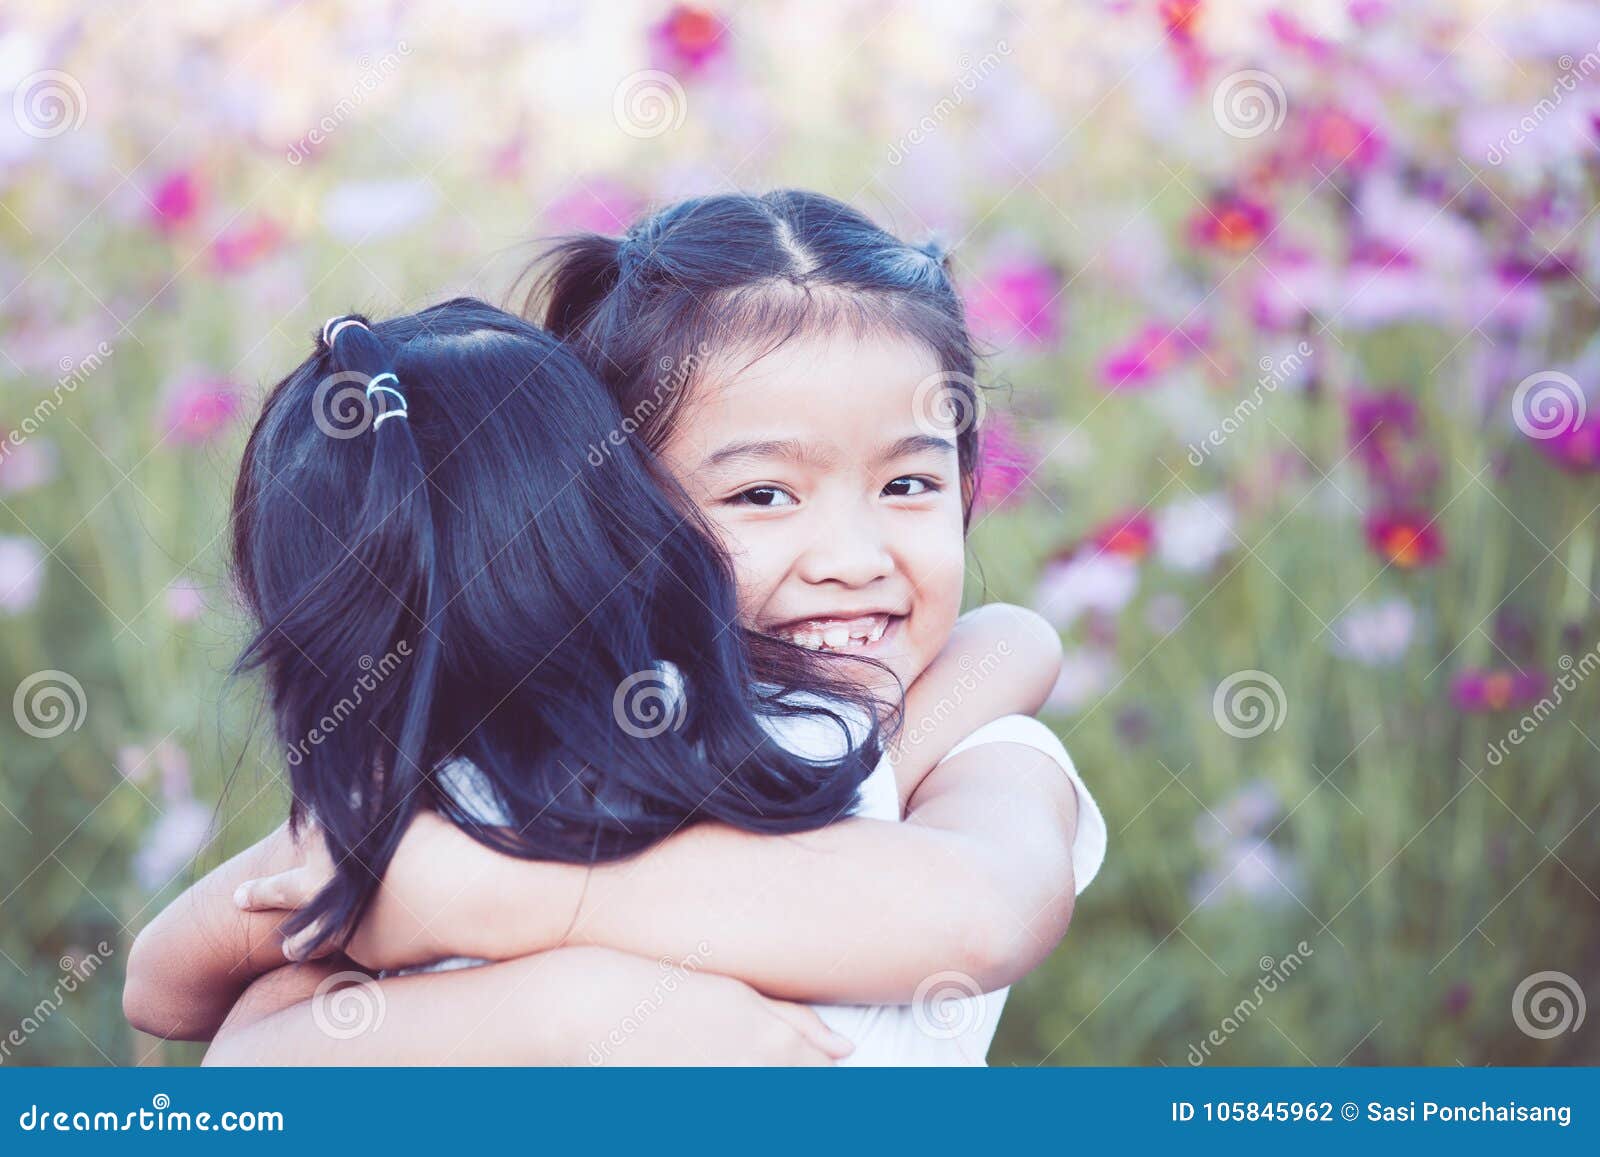 两个女孩拥抱在一起 库存照片. 图片 包括有 家庭, 长沙发, 受影响, 关心, 技术支持, 好朋友, 傻瓜 - 202443366